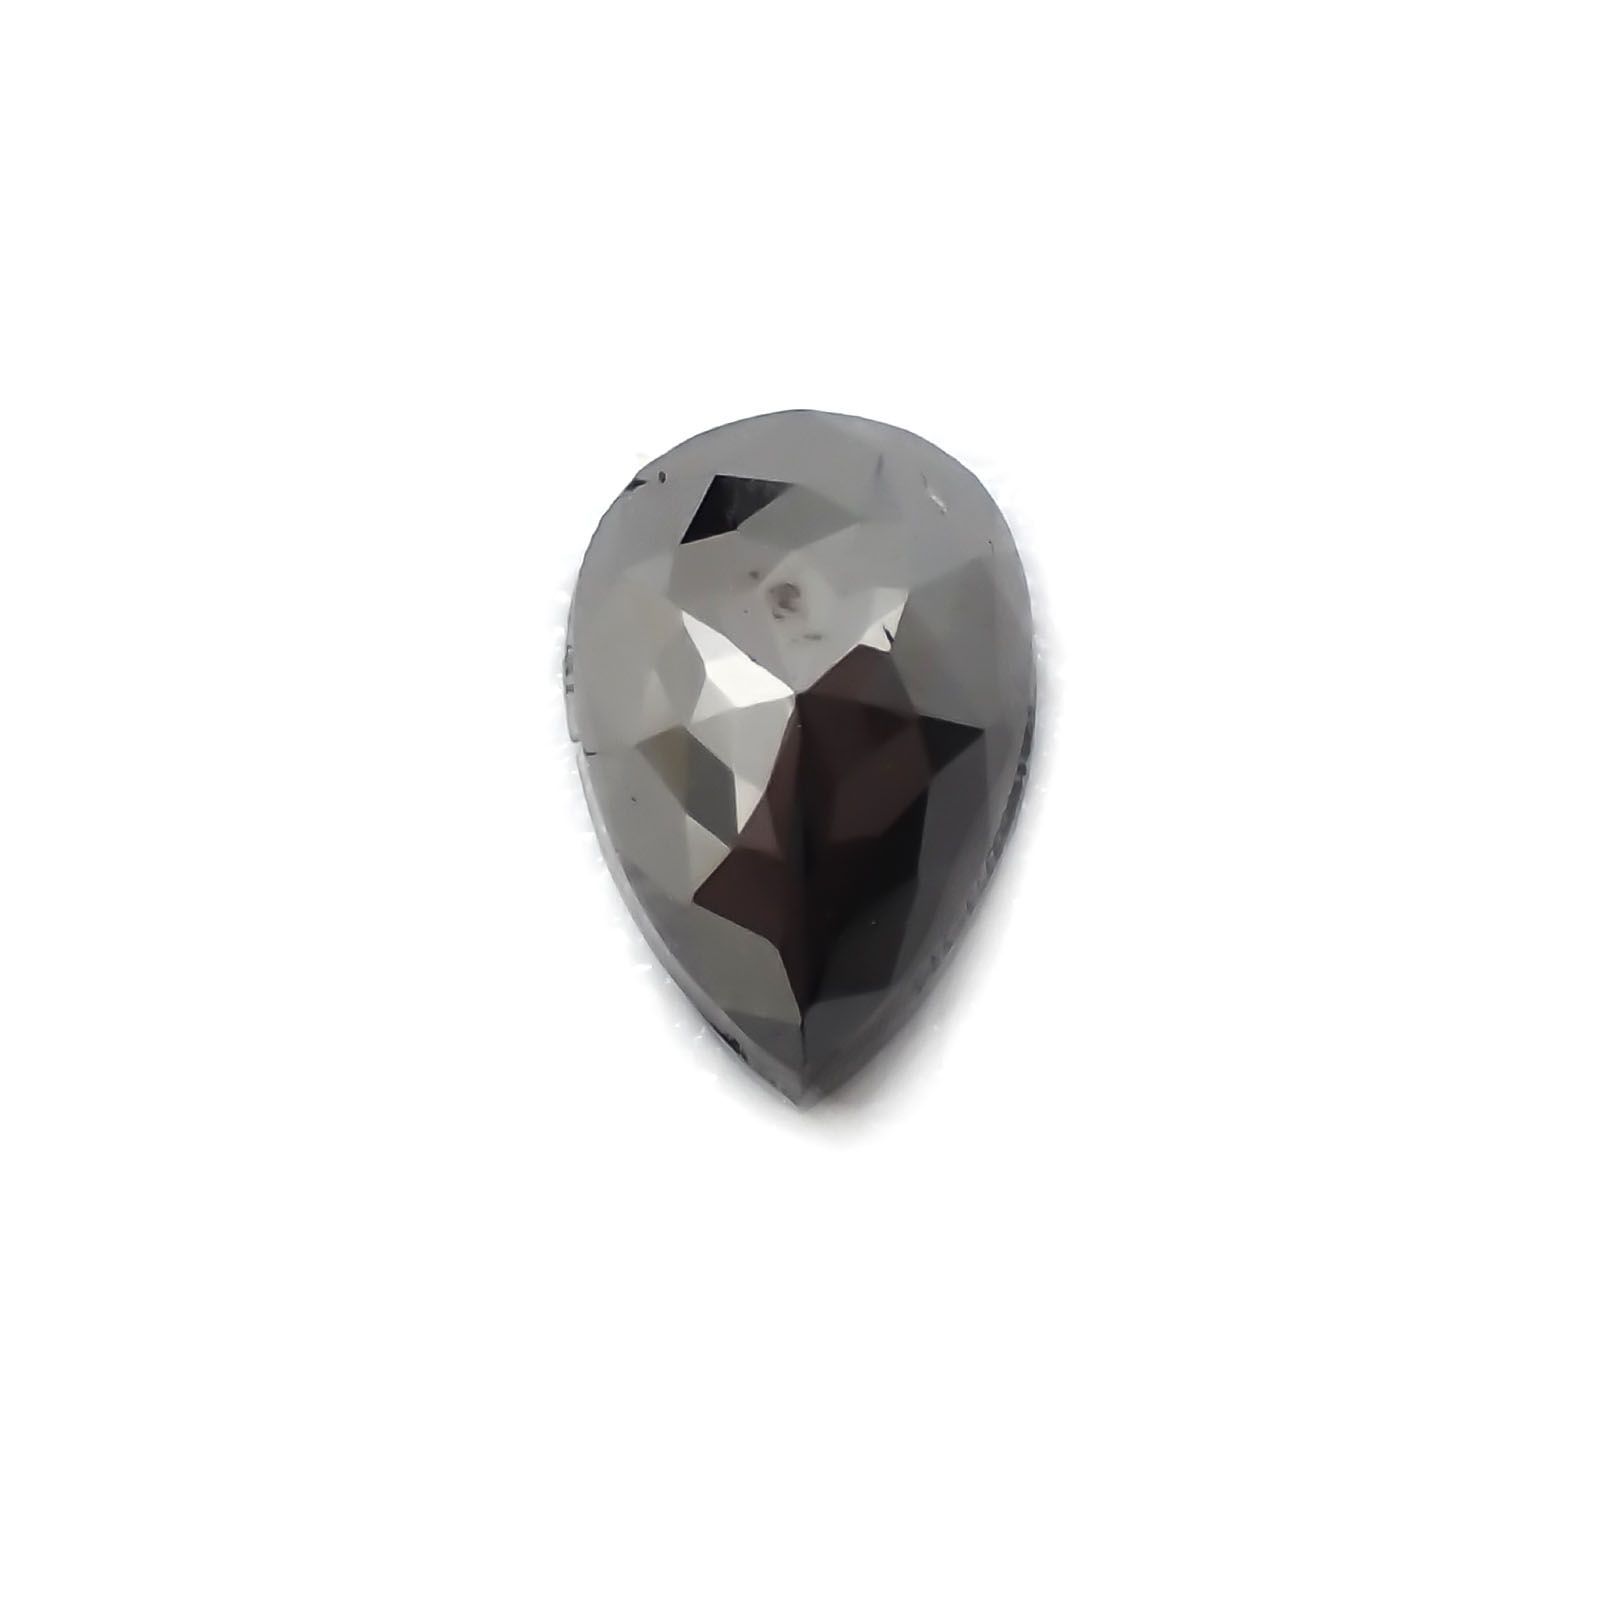 ブラックダイヤモンド(宝石名ダイアモンド) ジンバブエ産 0.63ct 識別 